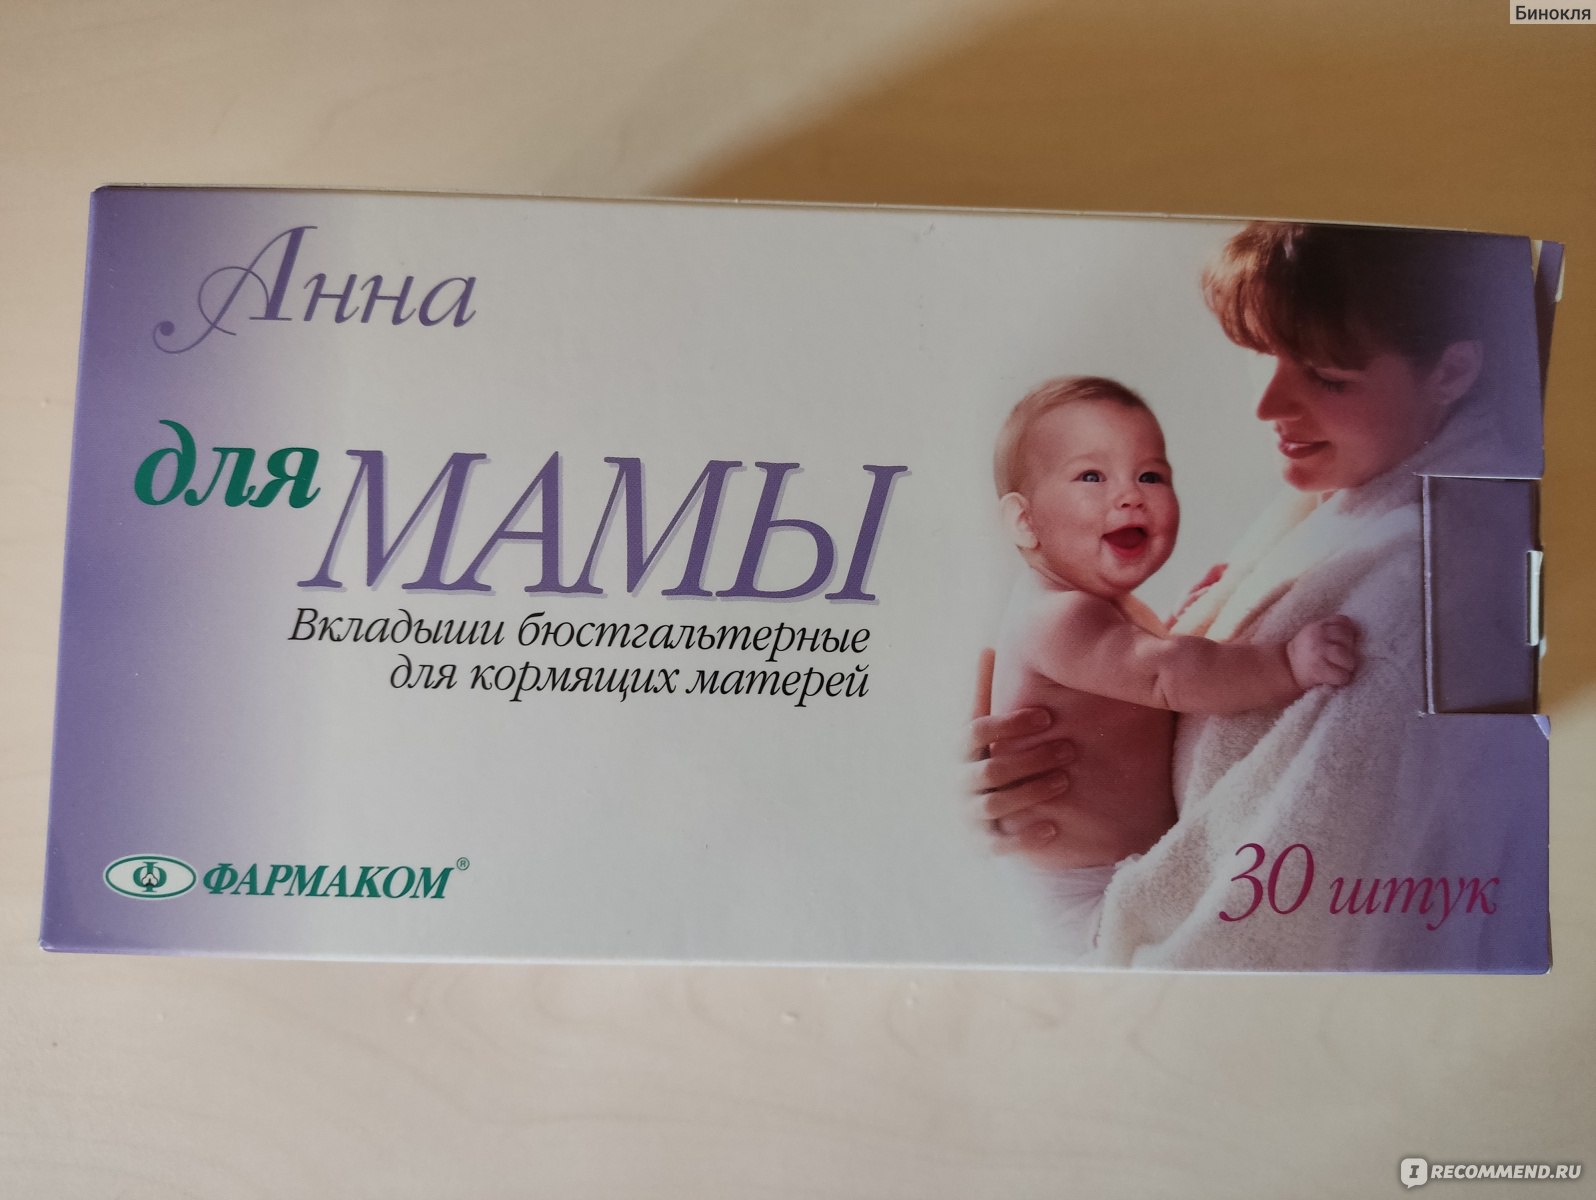 Прокладки для груди Фармком Анна Вкладыши бюстгальтерные для кормящих матерей, 30 шт фото